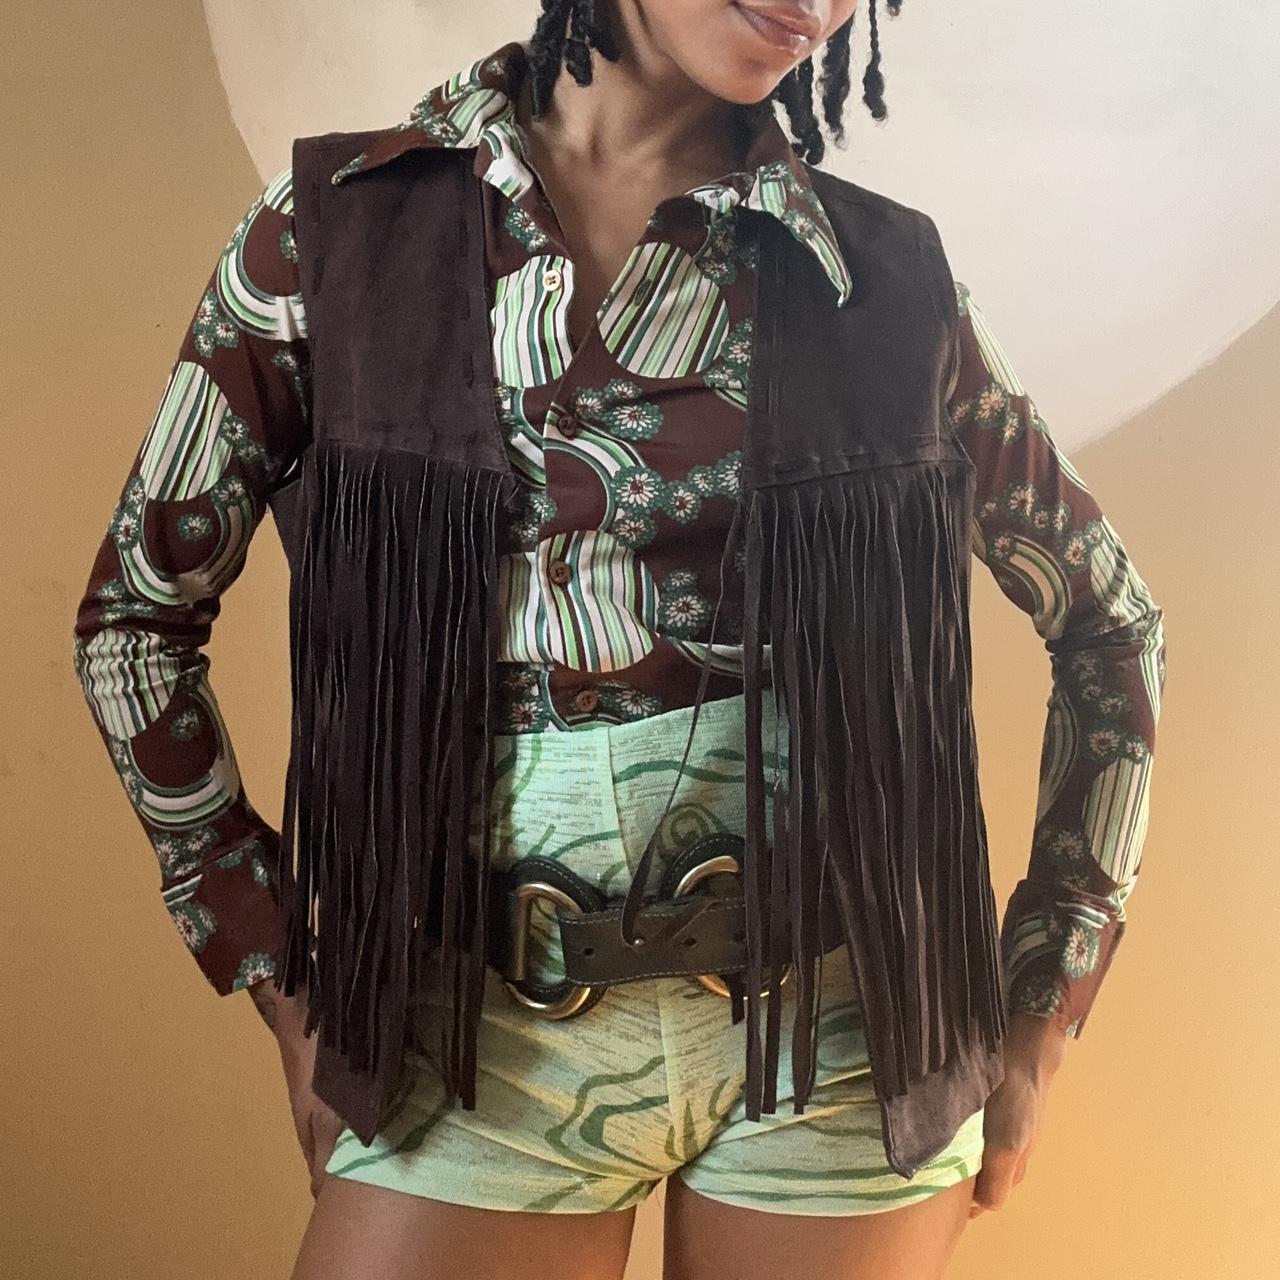 Brown Leather Fringe Vest ✨Western Retro... - Depop